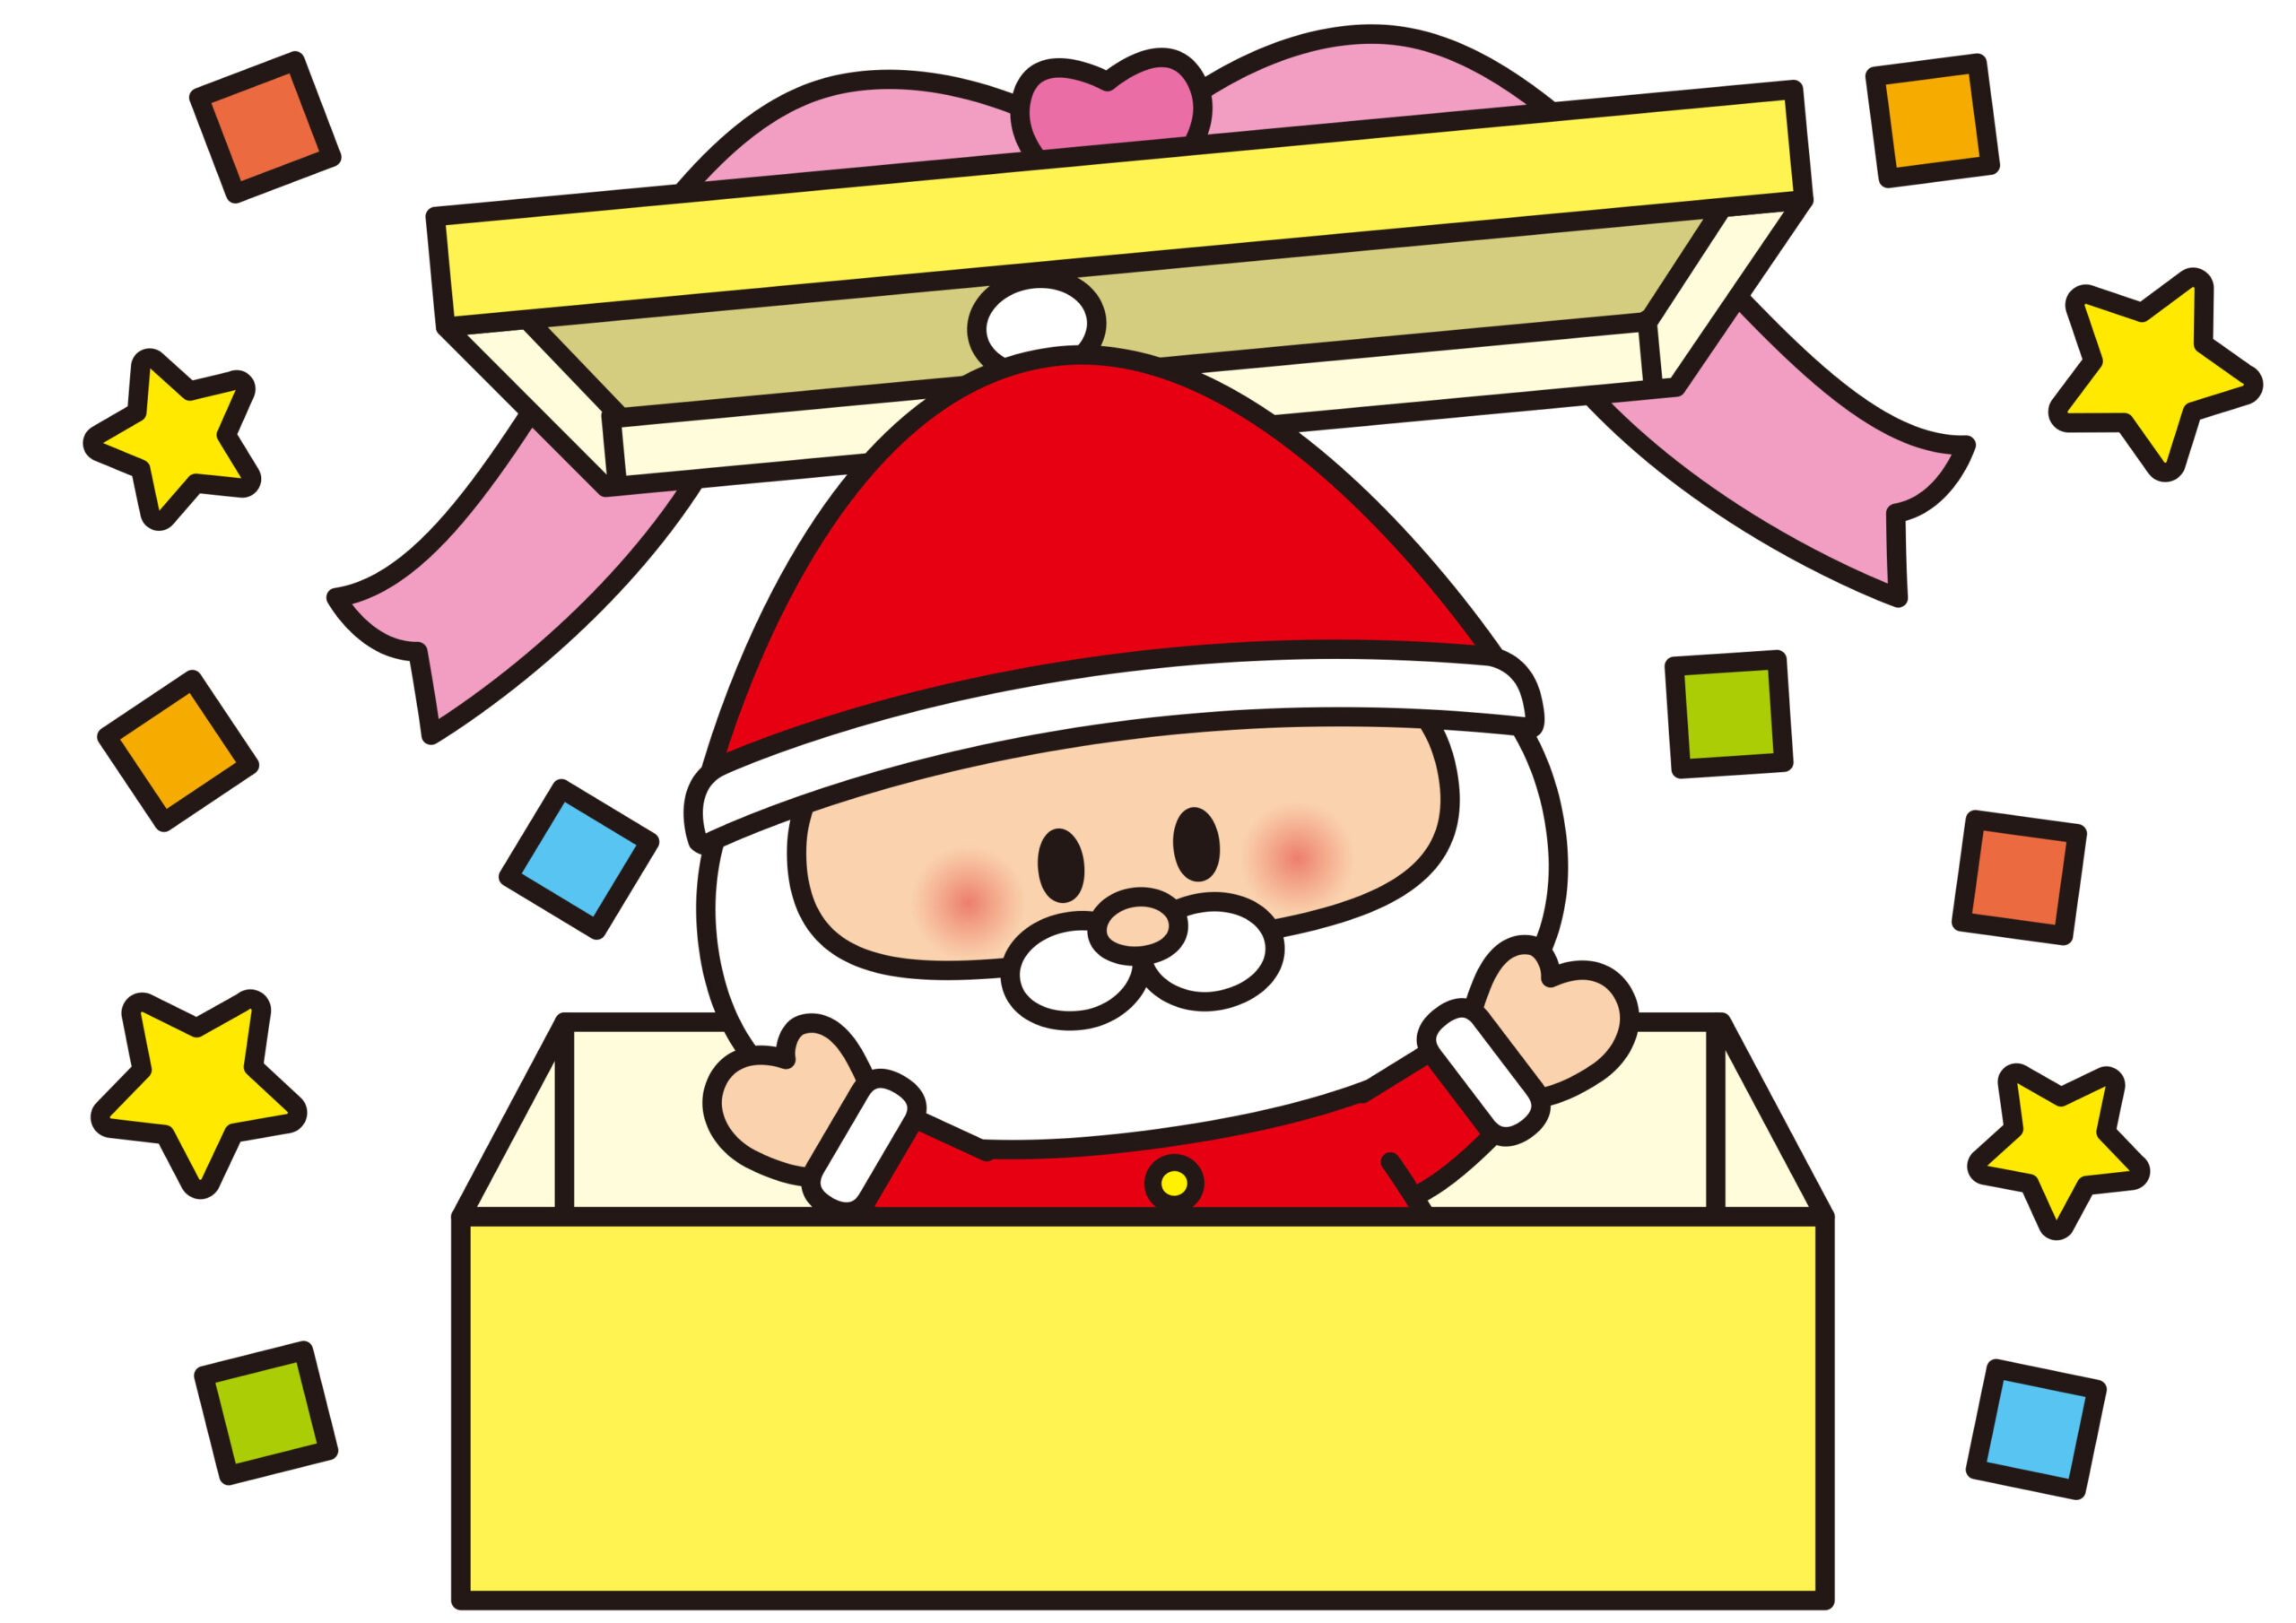 《12月25日》ビバシティ彦根の人気者とクリスマスパレード☆文字集めラリーをしてガラポン抽選に参加しよう♪